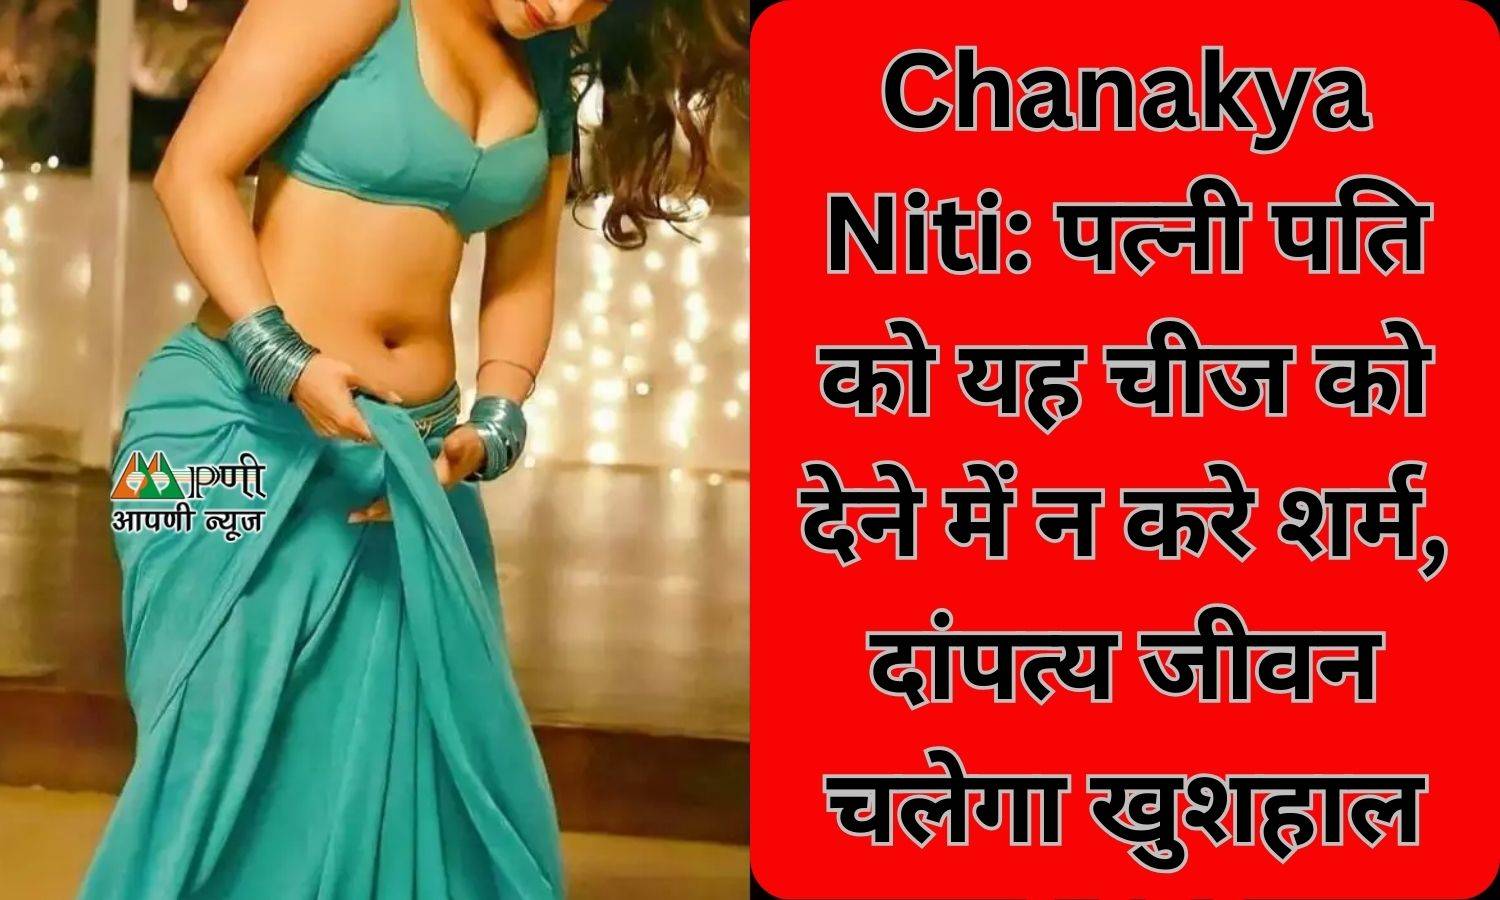 Chanakya Niti: पत्‍नी पति को यह चीज को देने में न करे शर्म, दांपत्य जीवन चलेगा खुशहाल